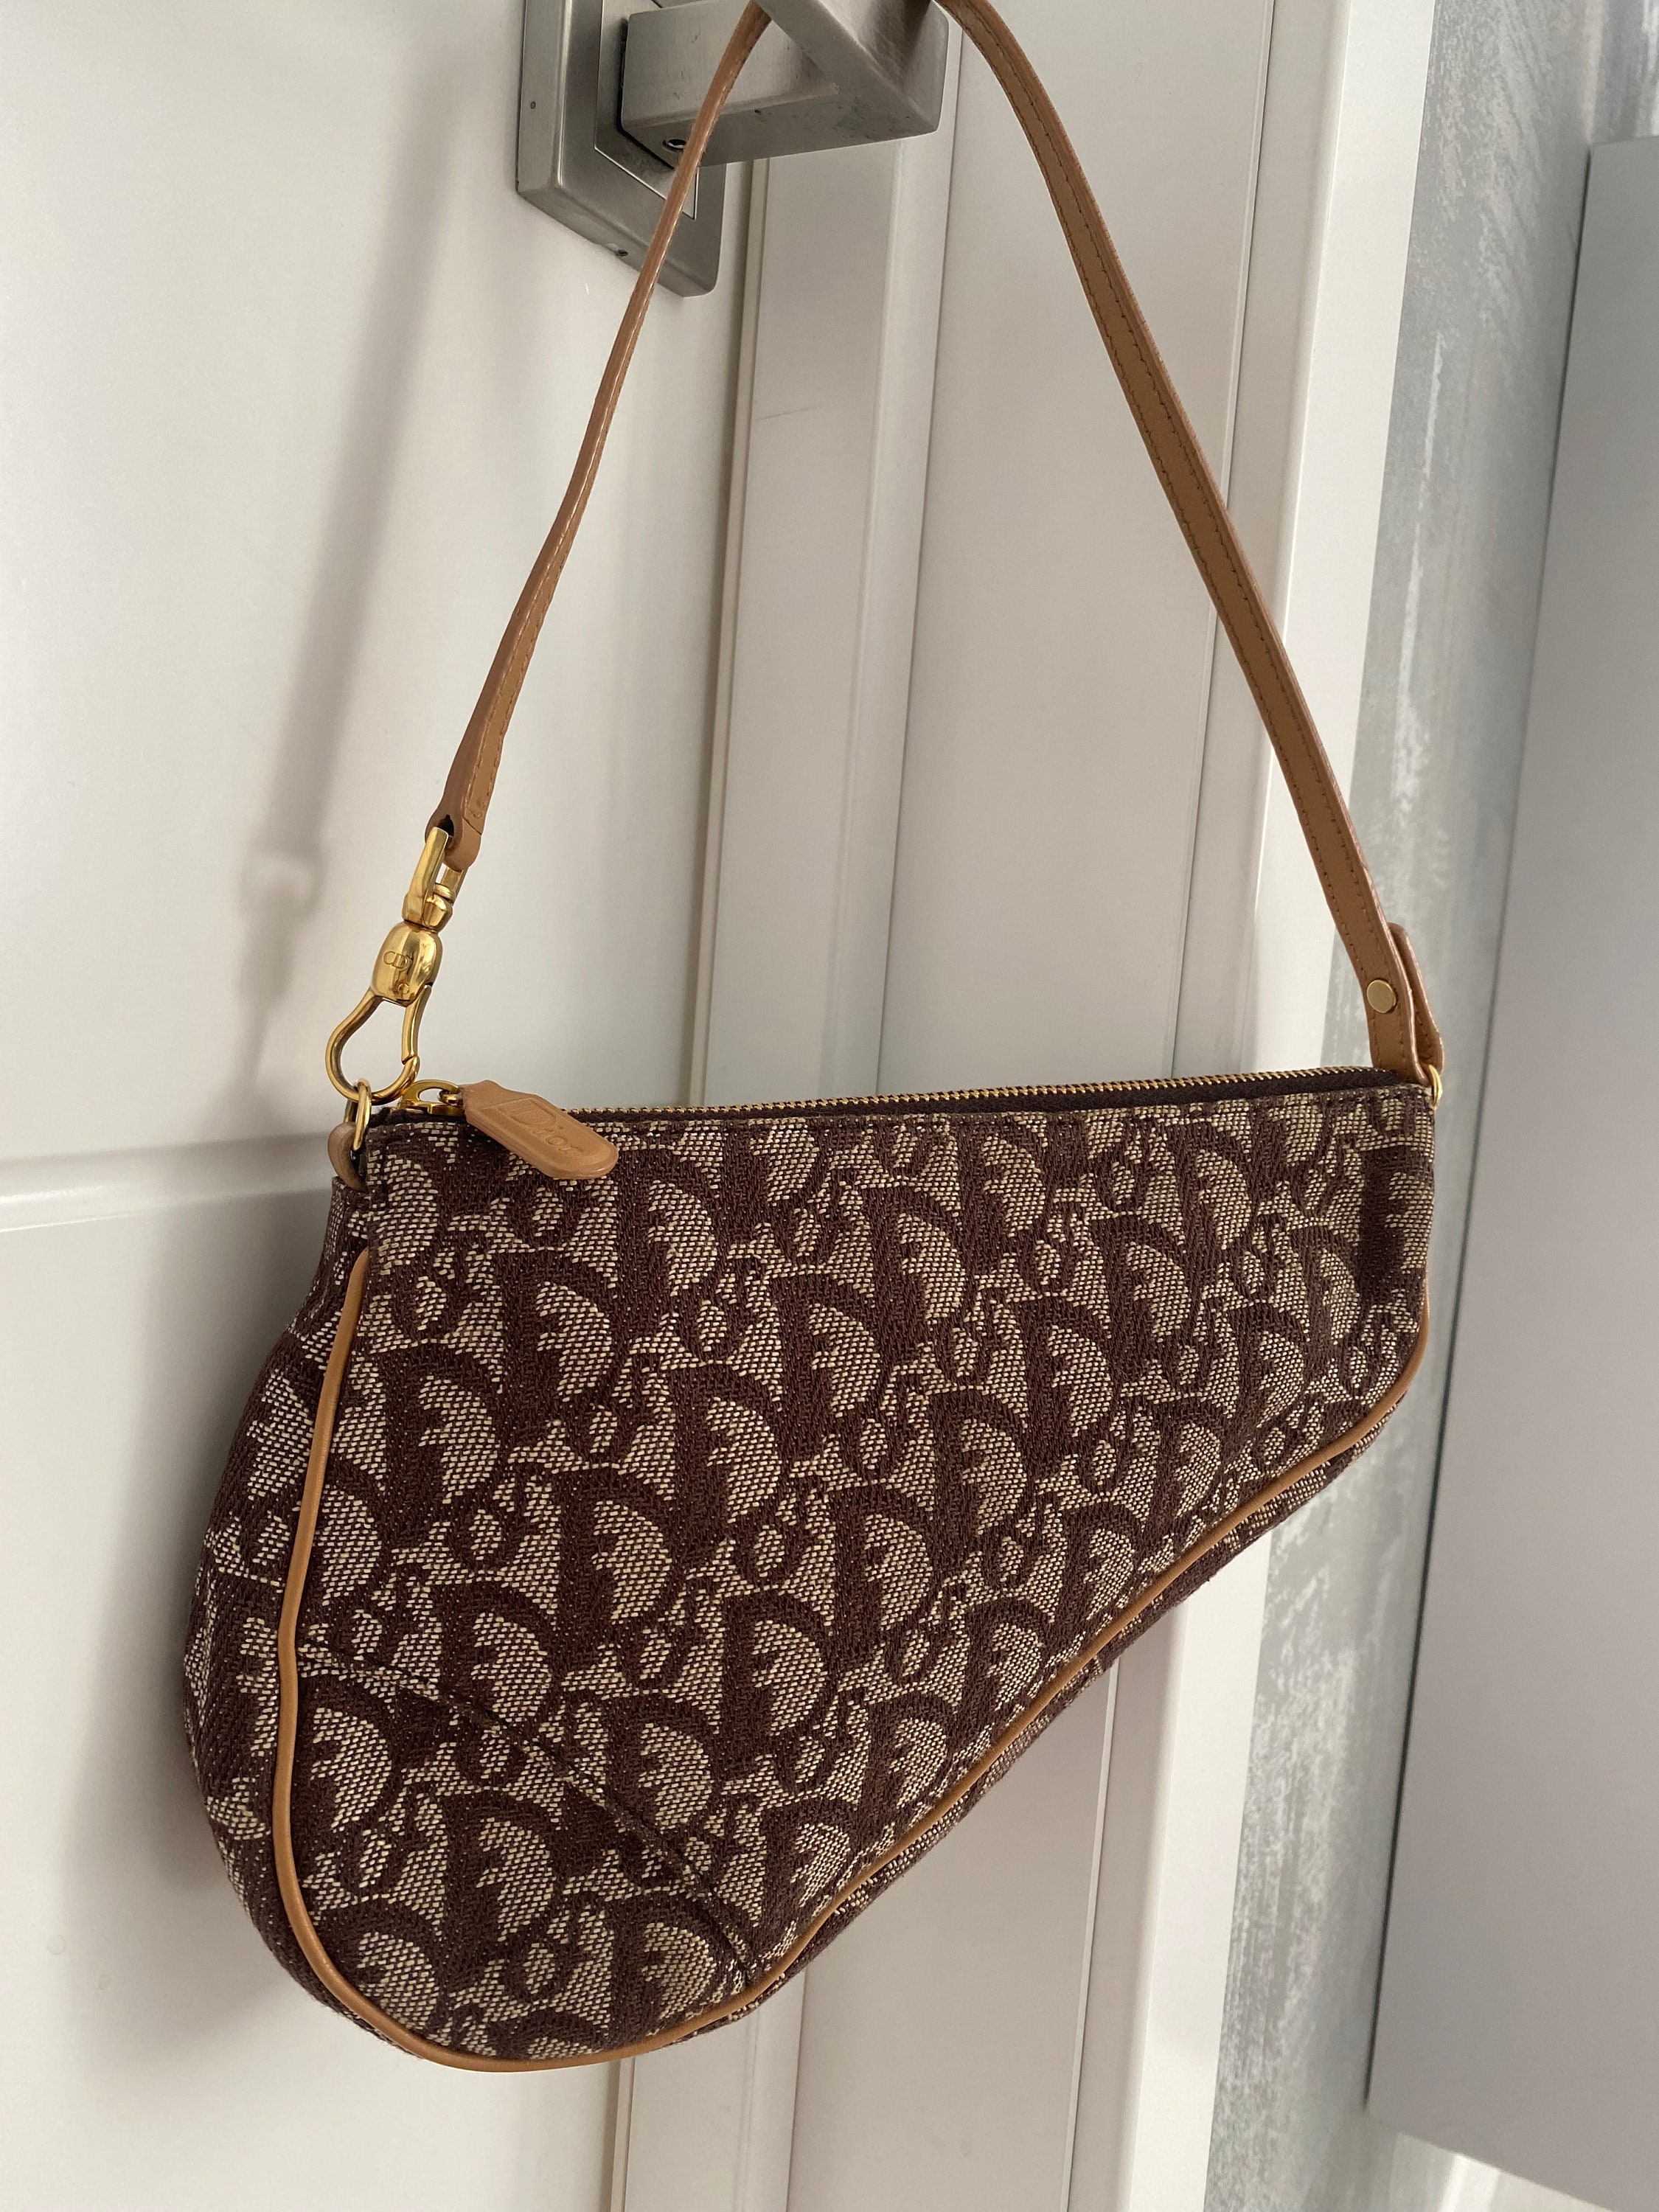 Christian Dior Vintage Saddle Bag Diorissimo Canvas Mini Brown